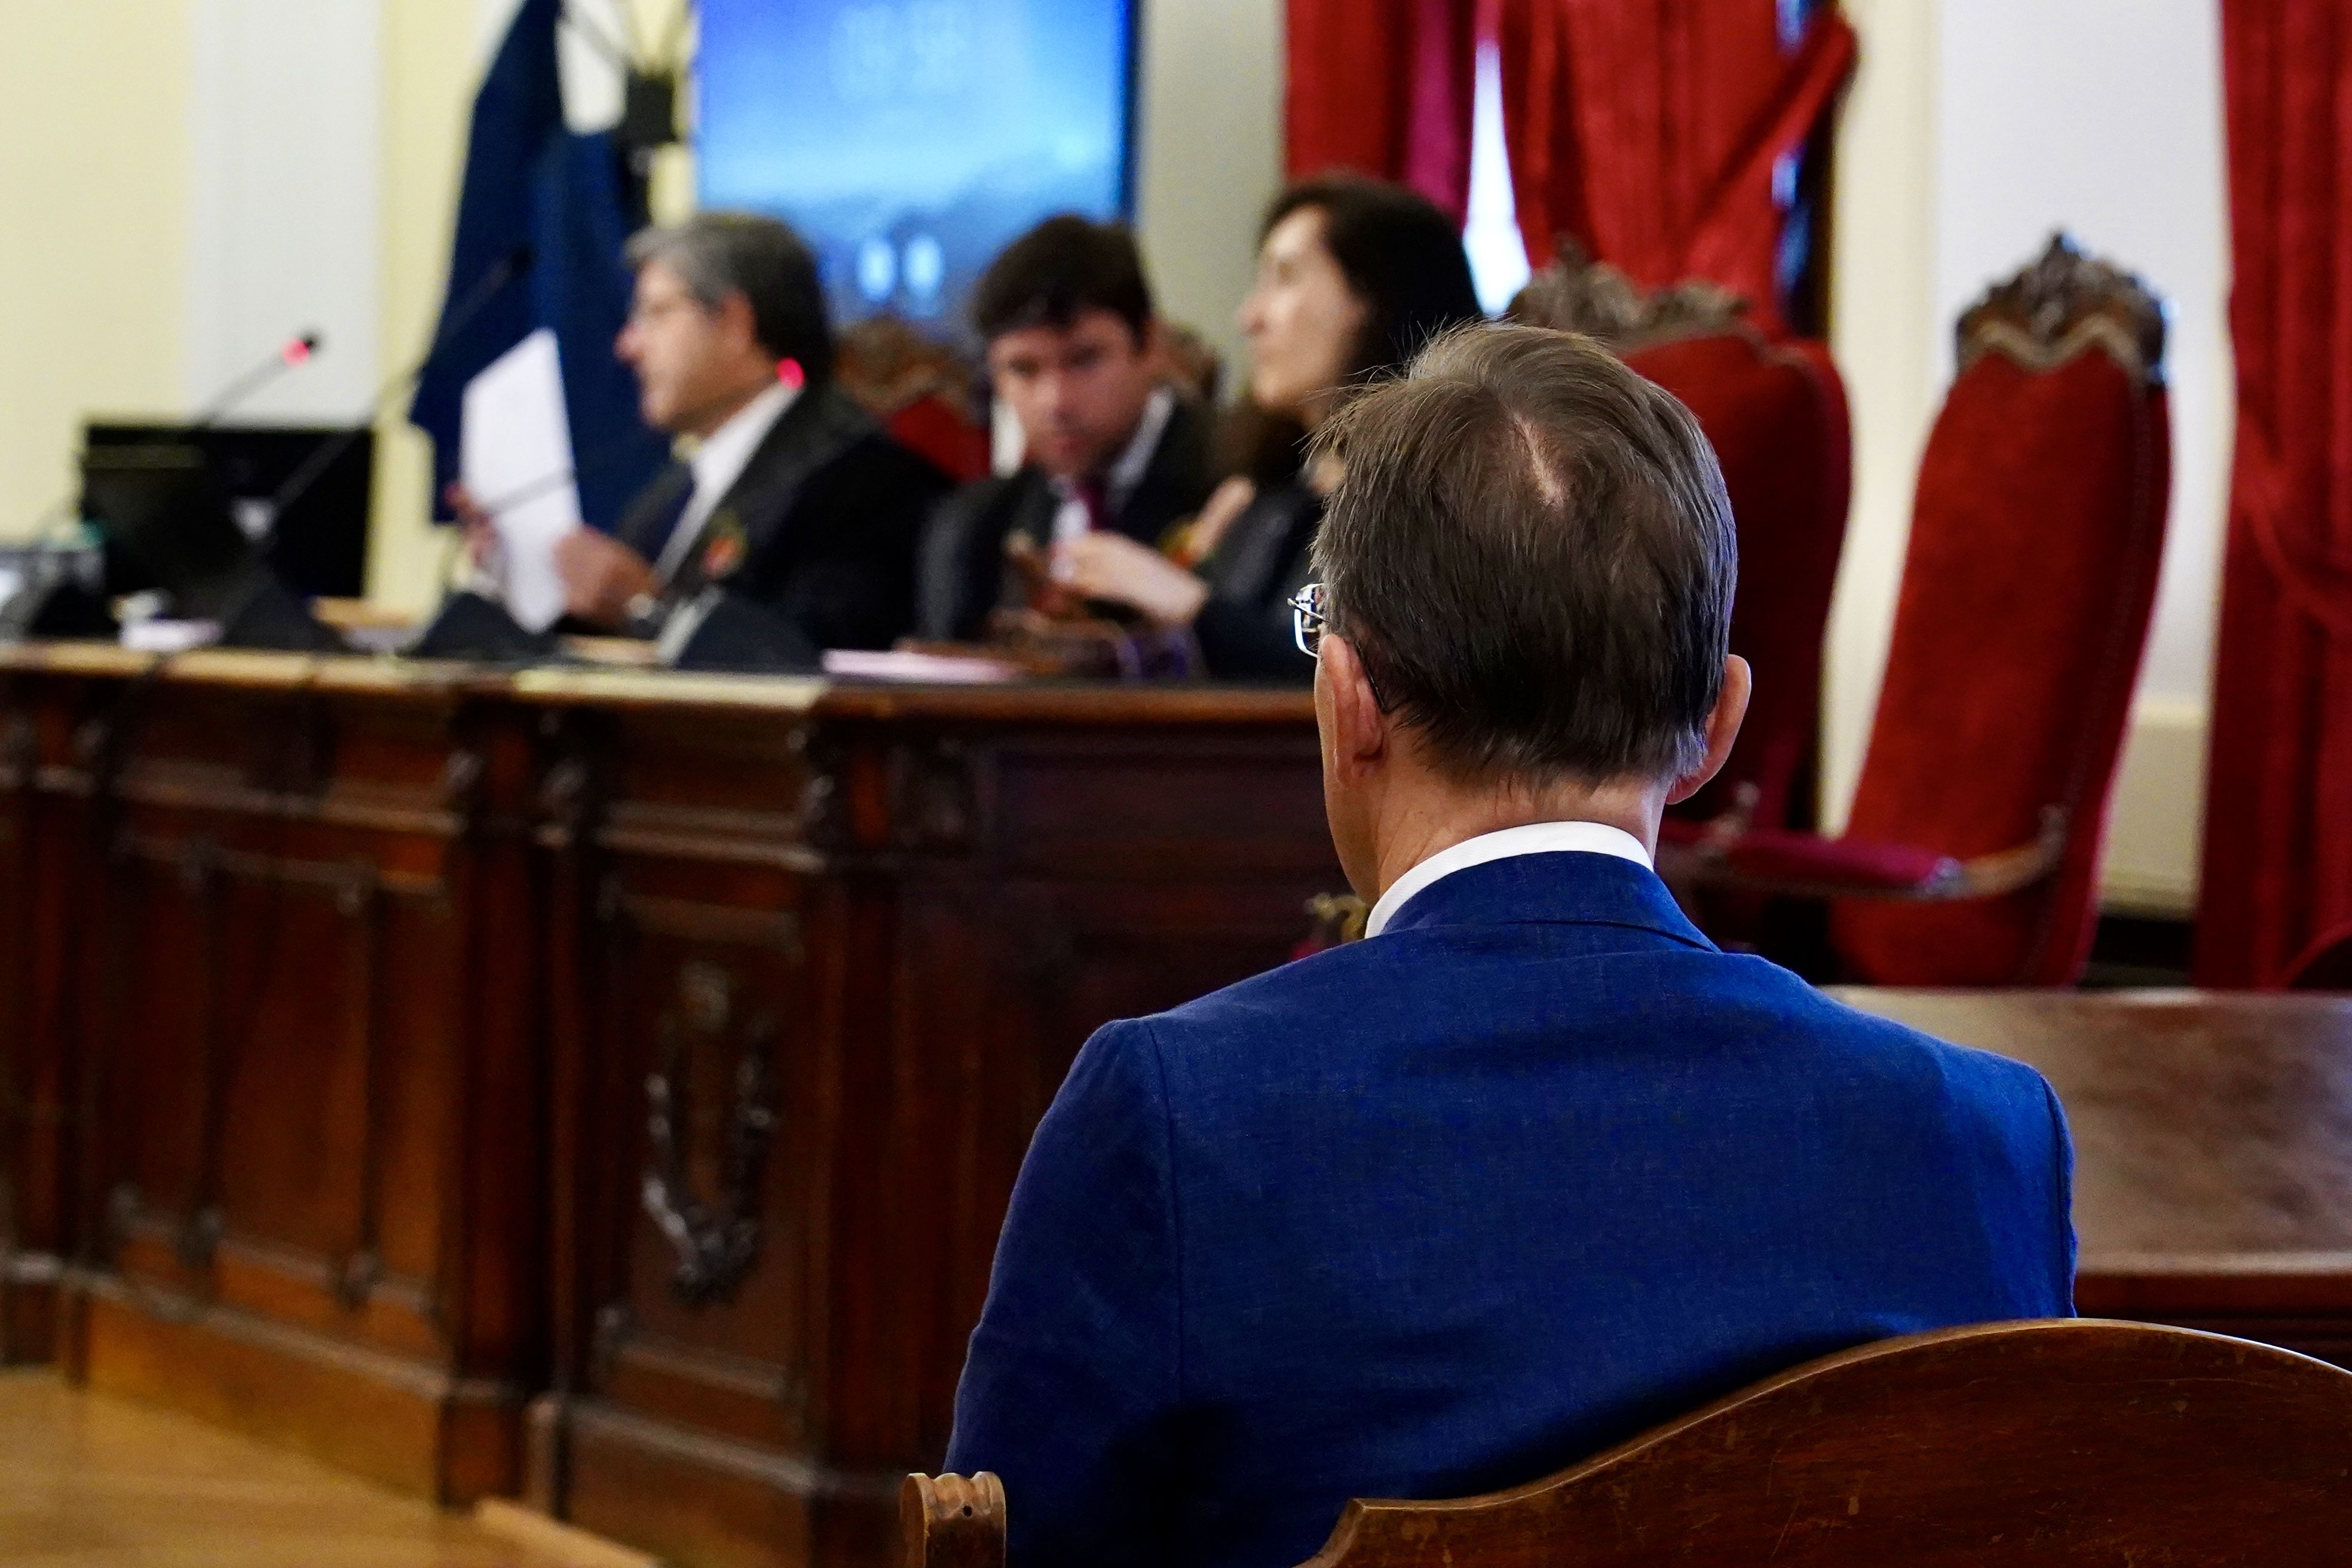  La Audiencia Provincial de León celebra el juicio de un profesional de la medicina acusado de abuso sexual